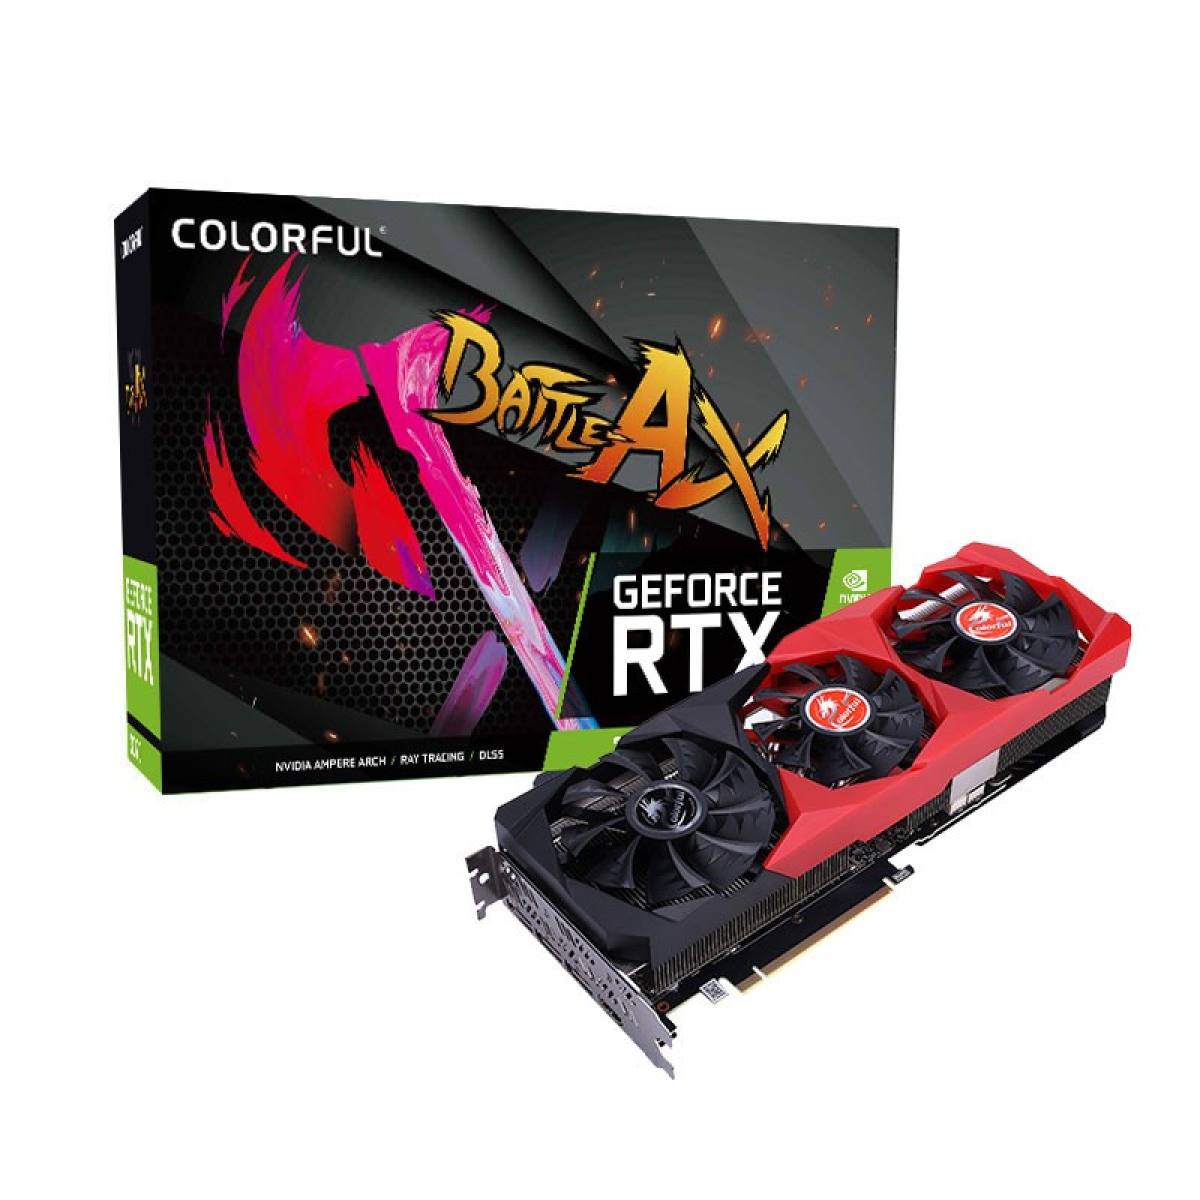 Colorful GeForce RTX 3070 NB 8G-V